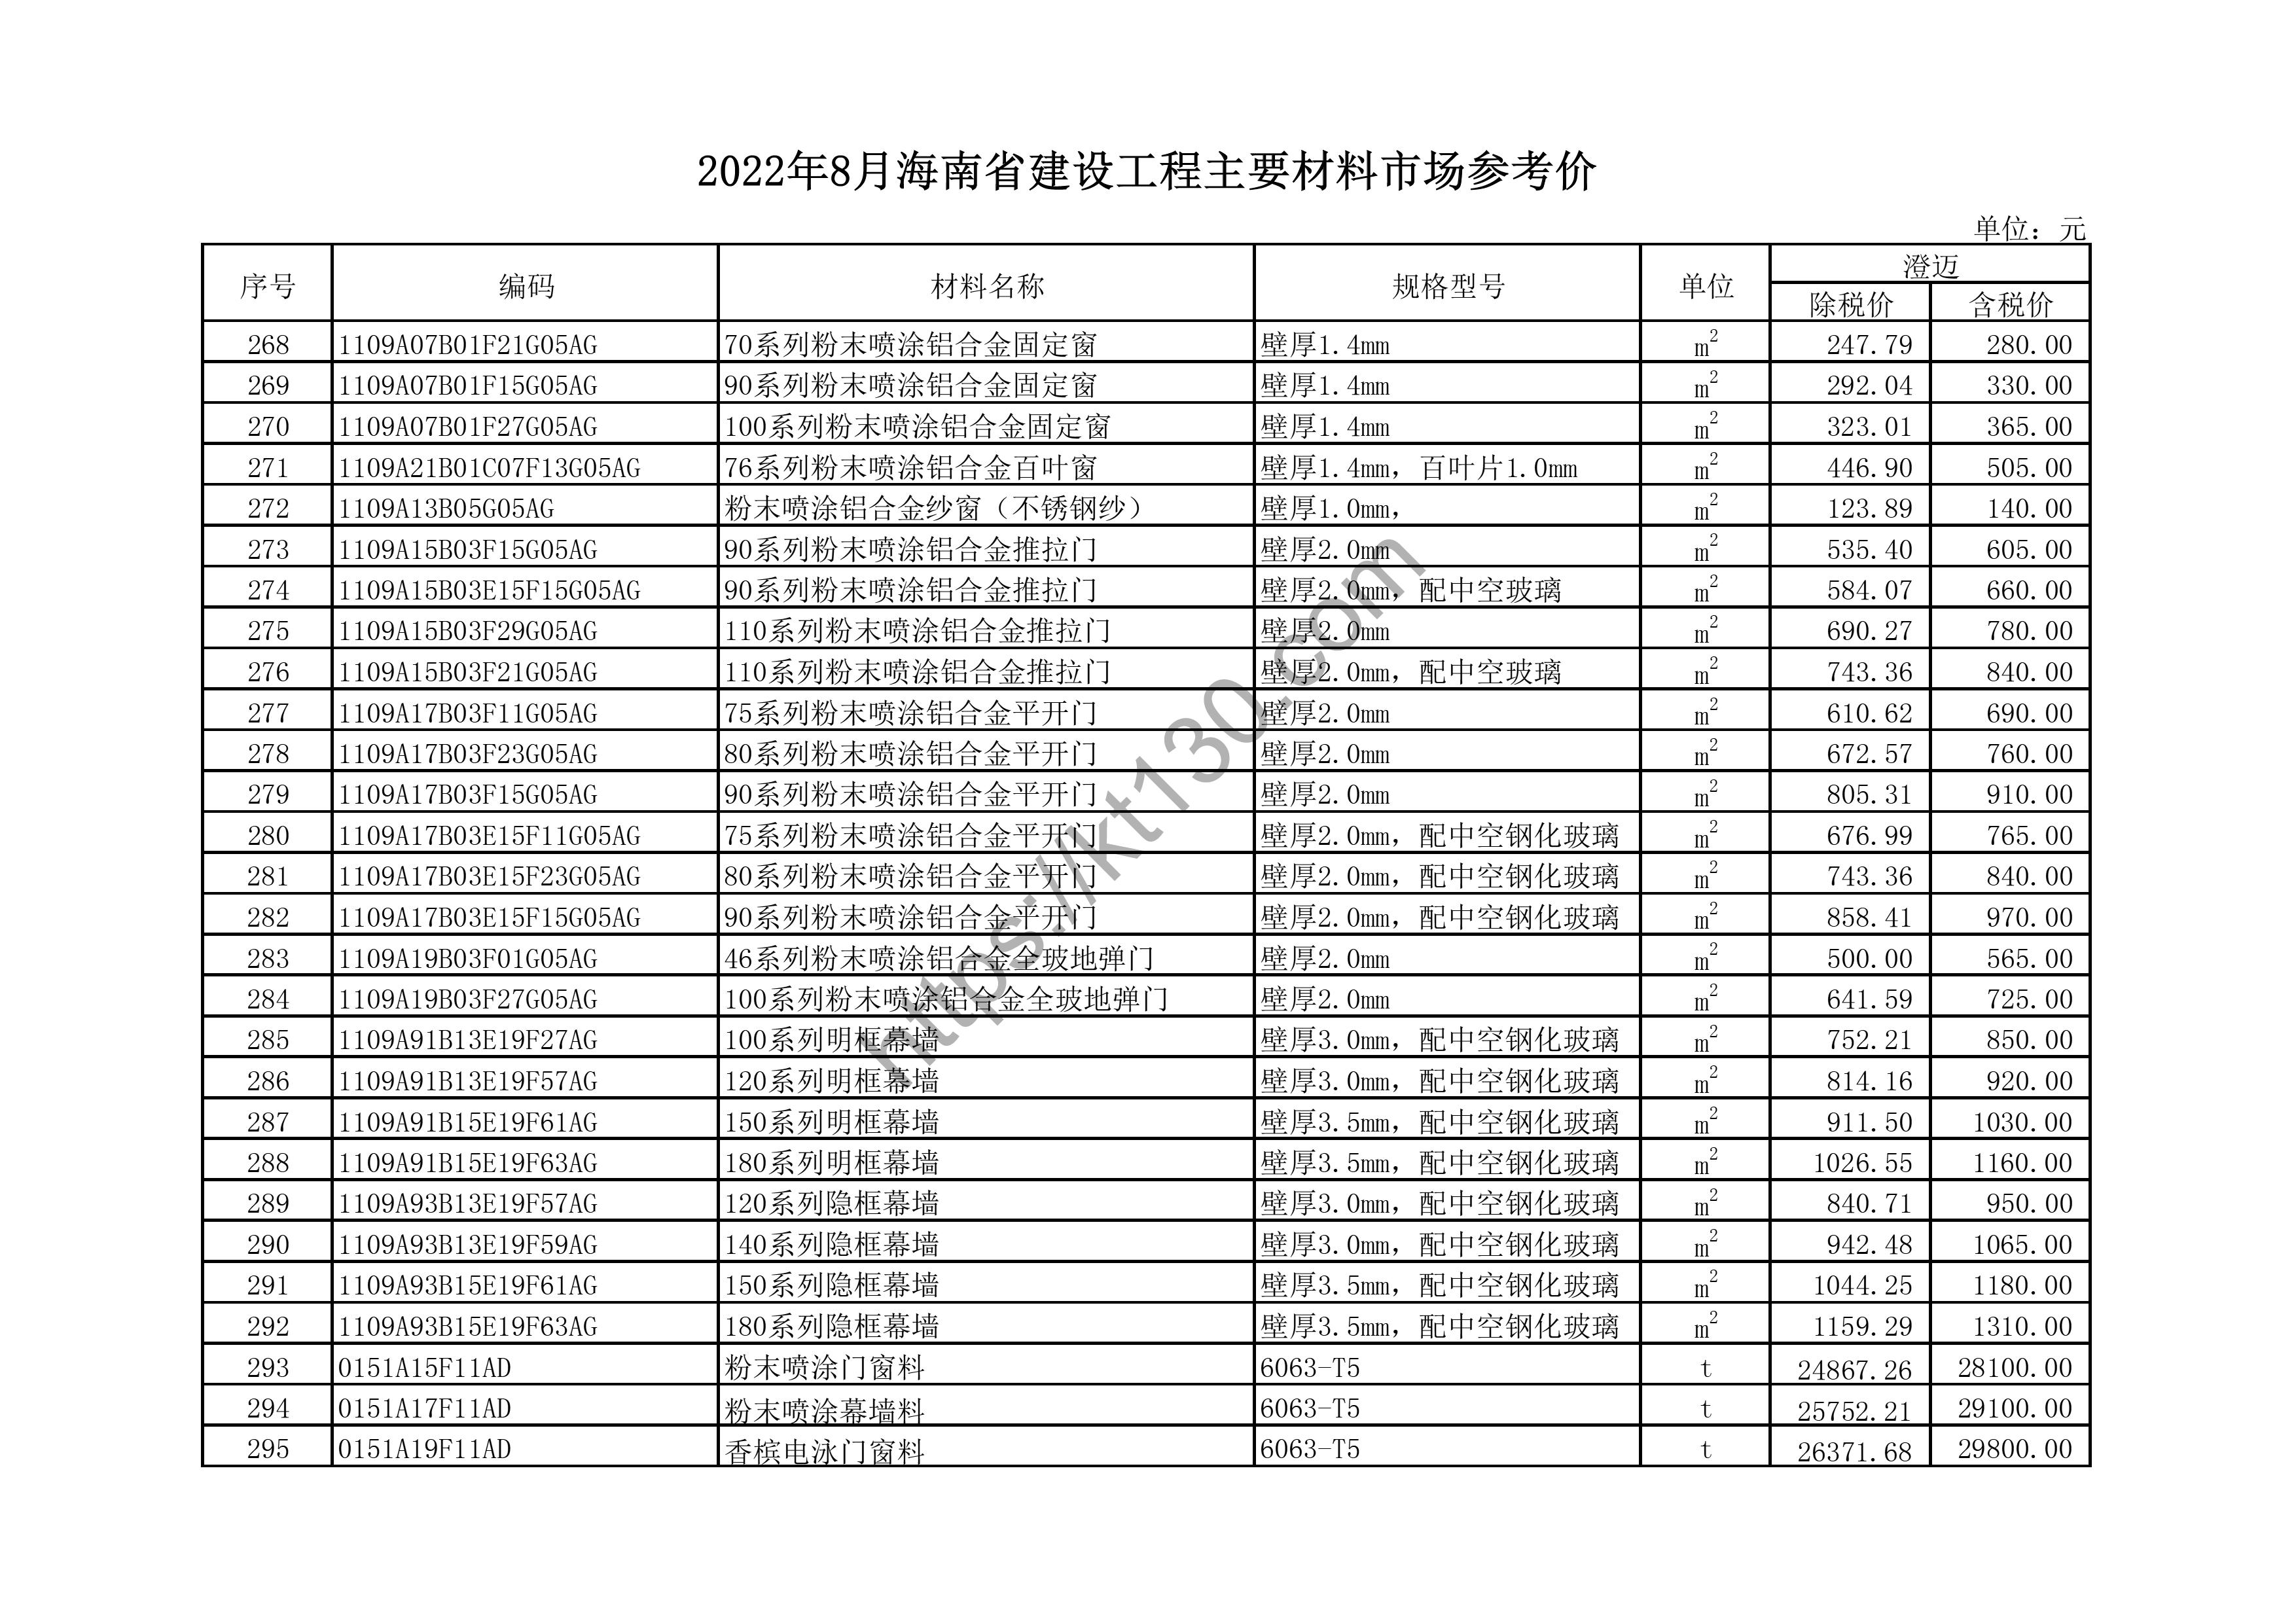 海南省2022年8月建筑材料价_木、竹材料_44705